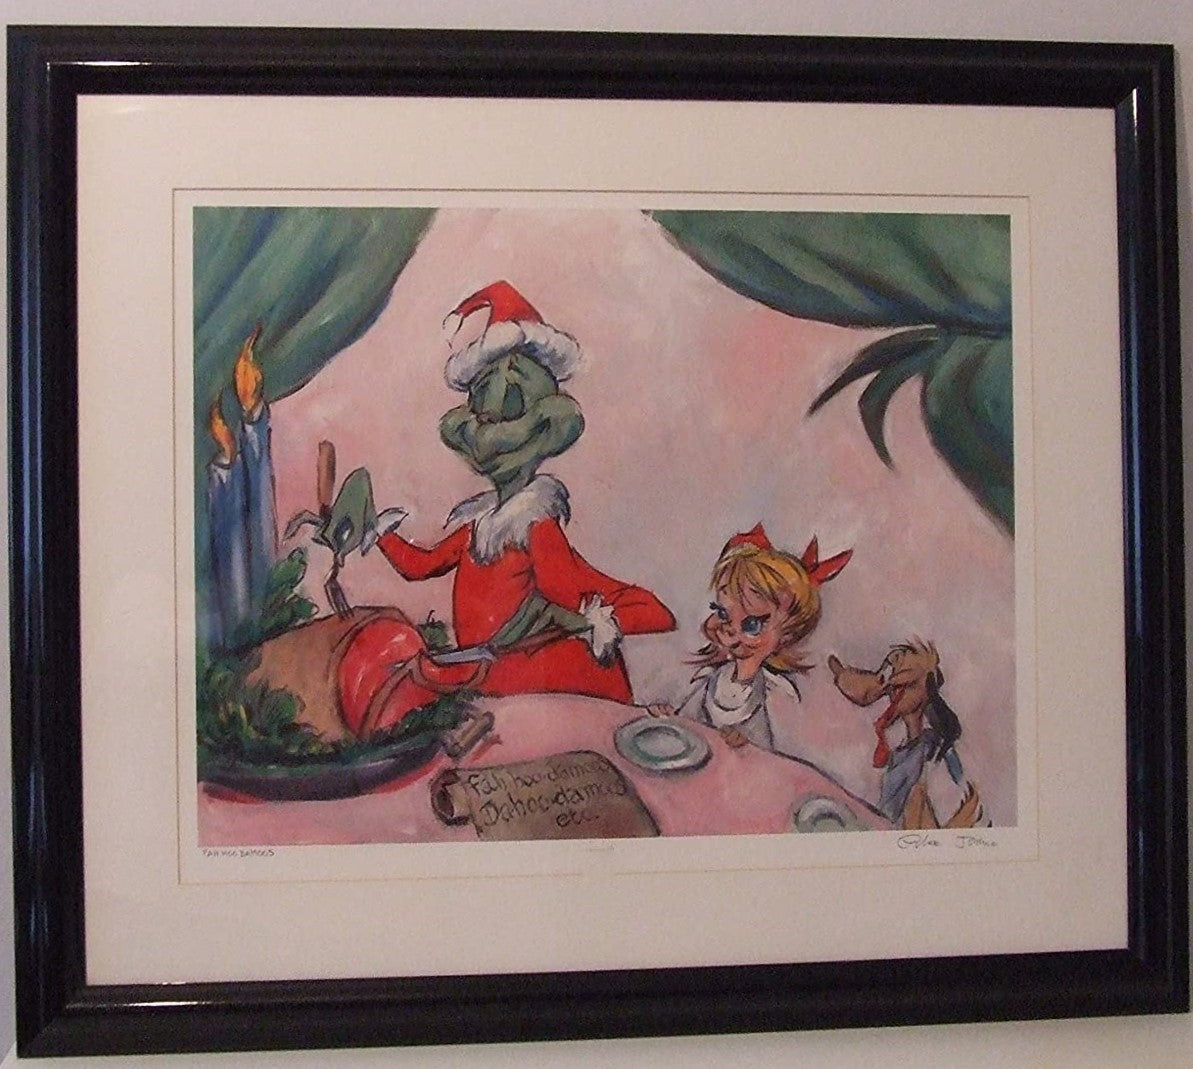 Dr. Seuss How The Grinch Stole Christmas "Fah-hoo Damoos" Chuck Jones Oil Painting Giclee